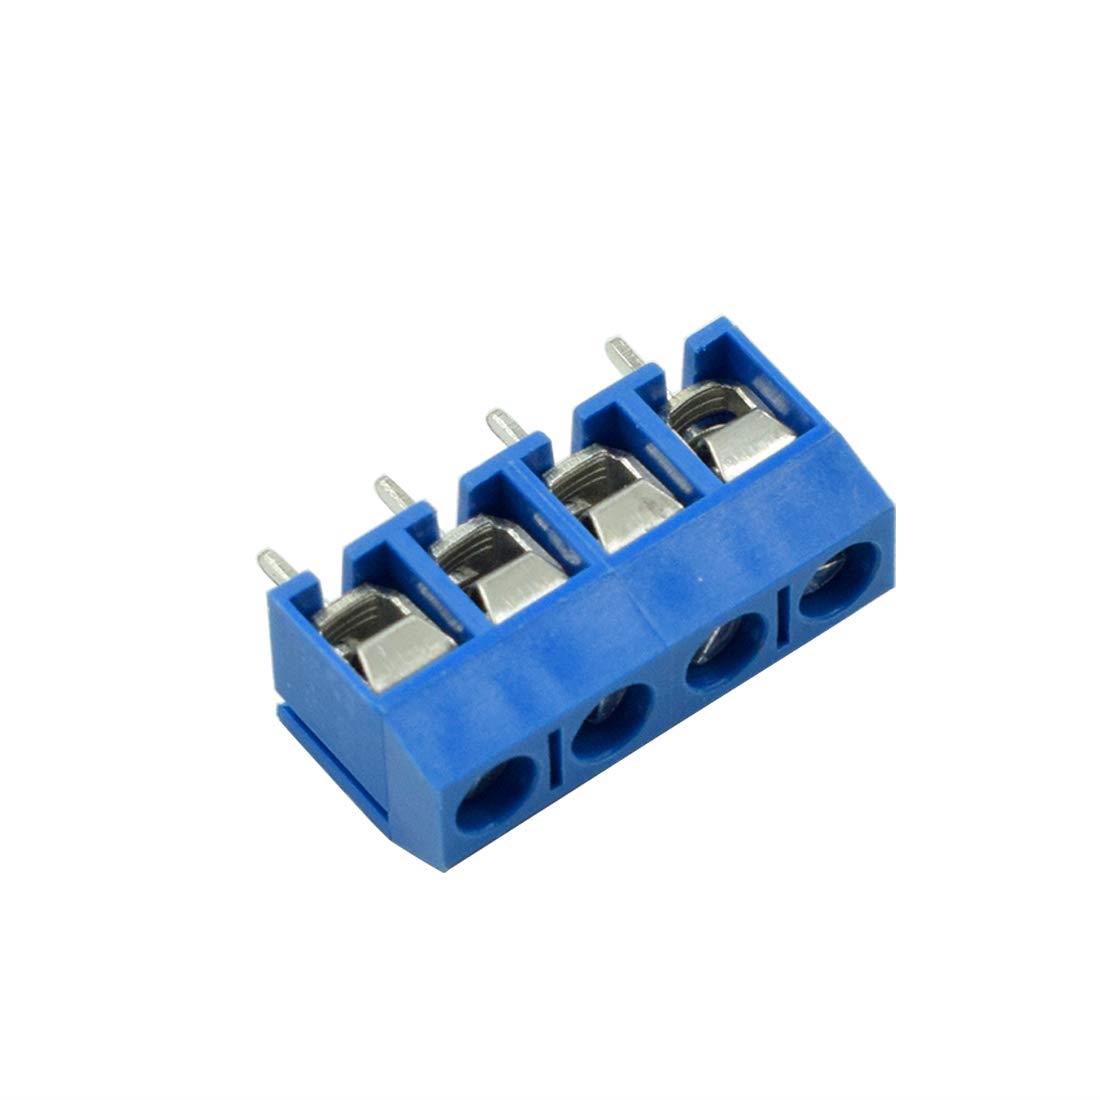 4pins 5.0/5.08mm PCB Connector Block Screw Terminals [10pcs Pack]